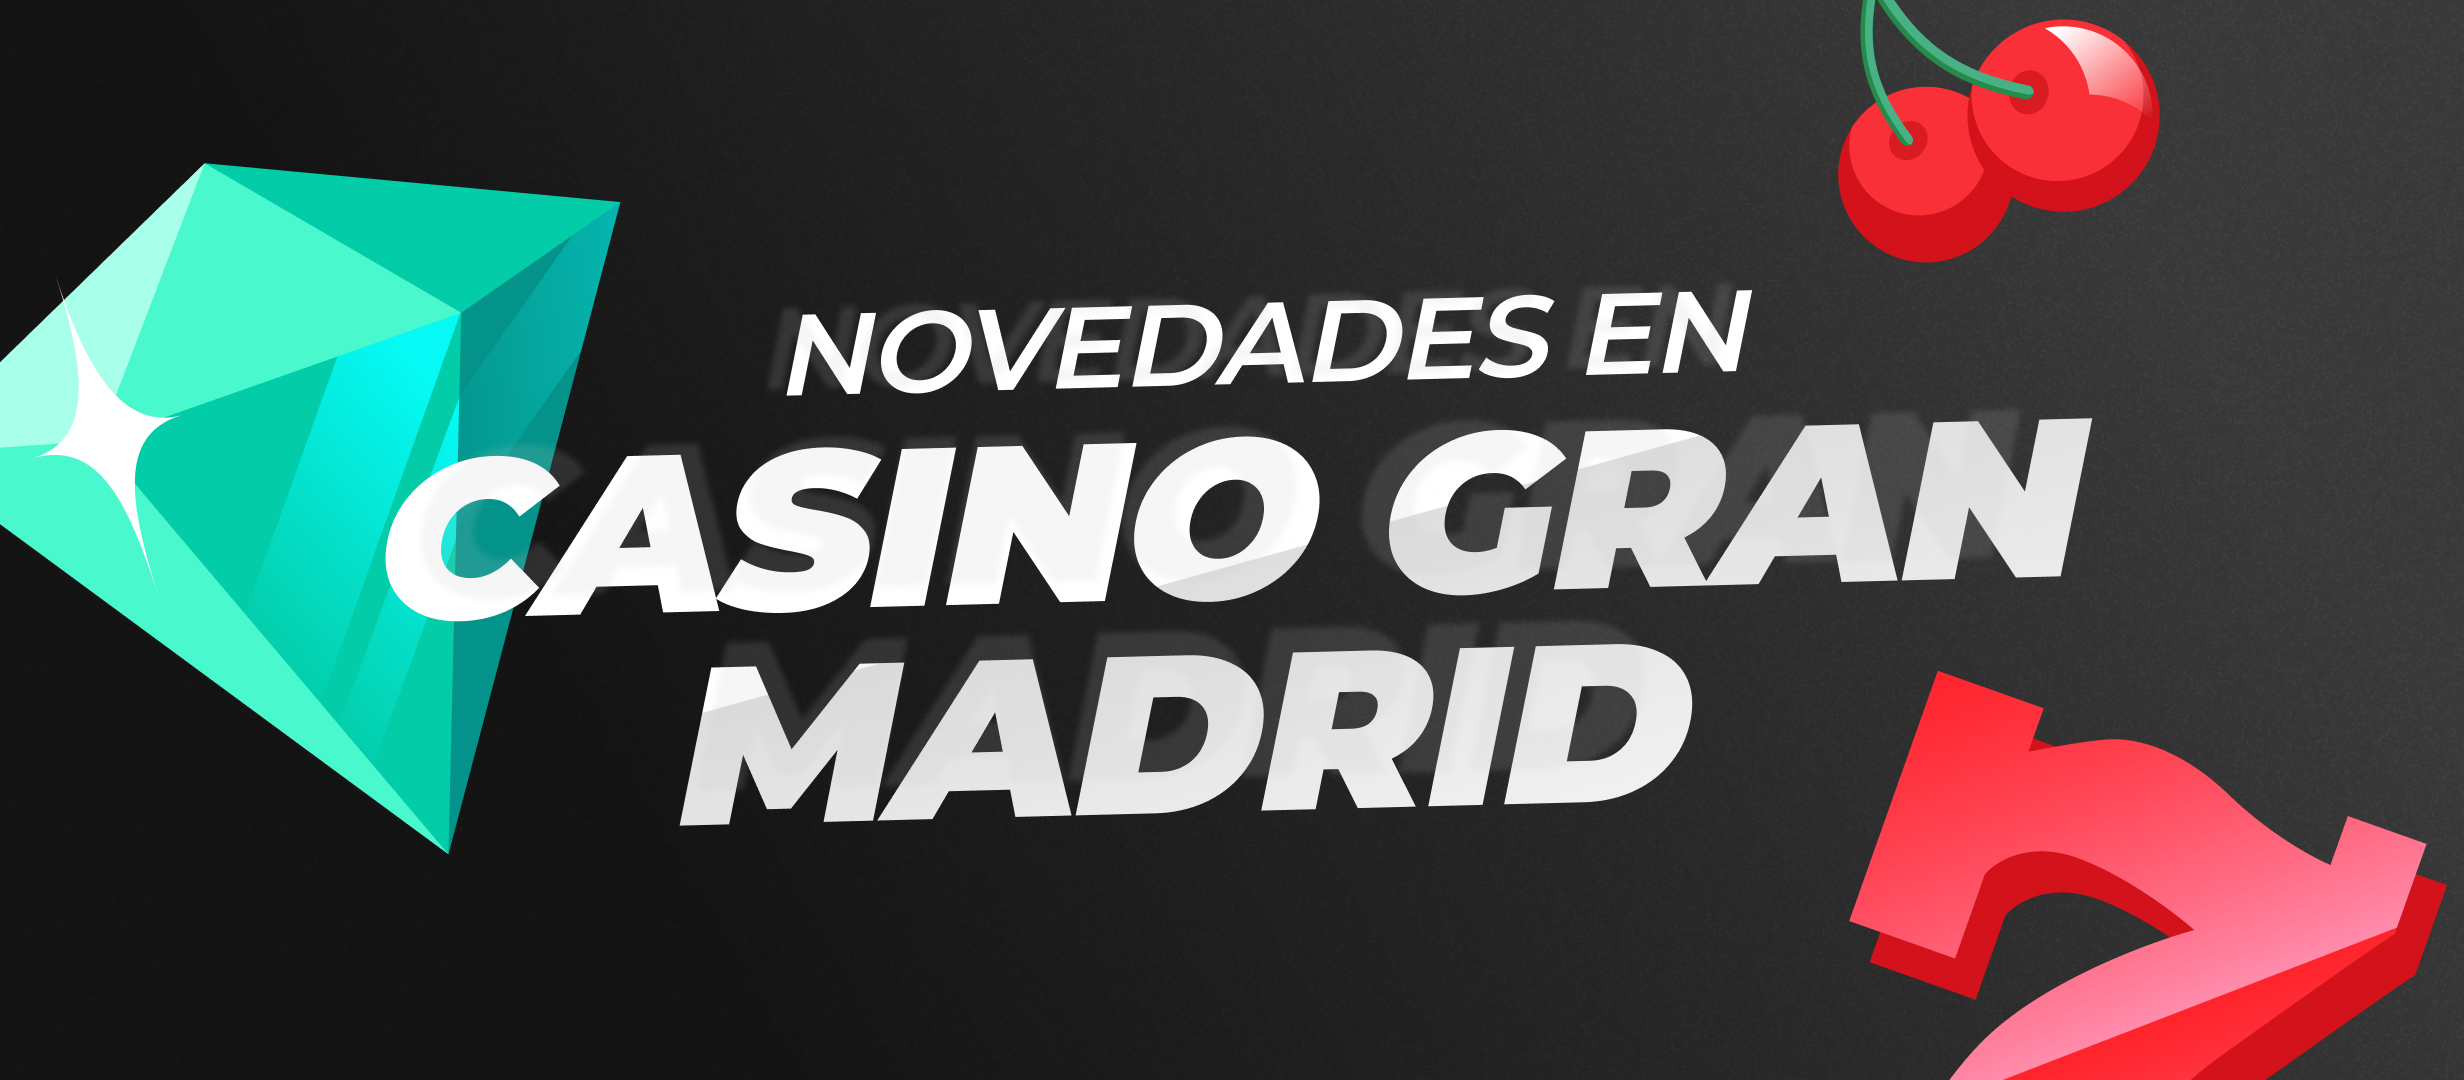 ¡Novedades en Casino Gran Madrid!